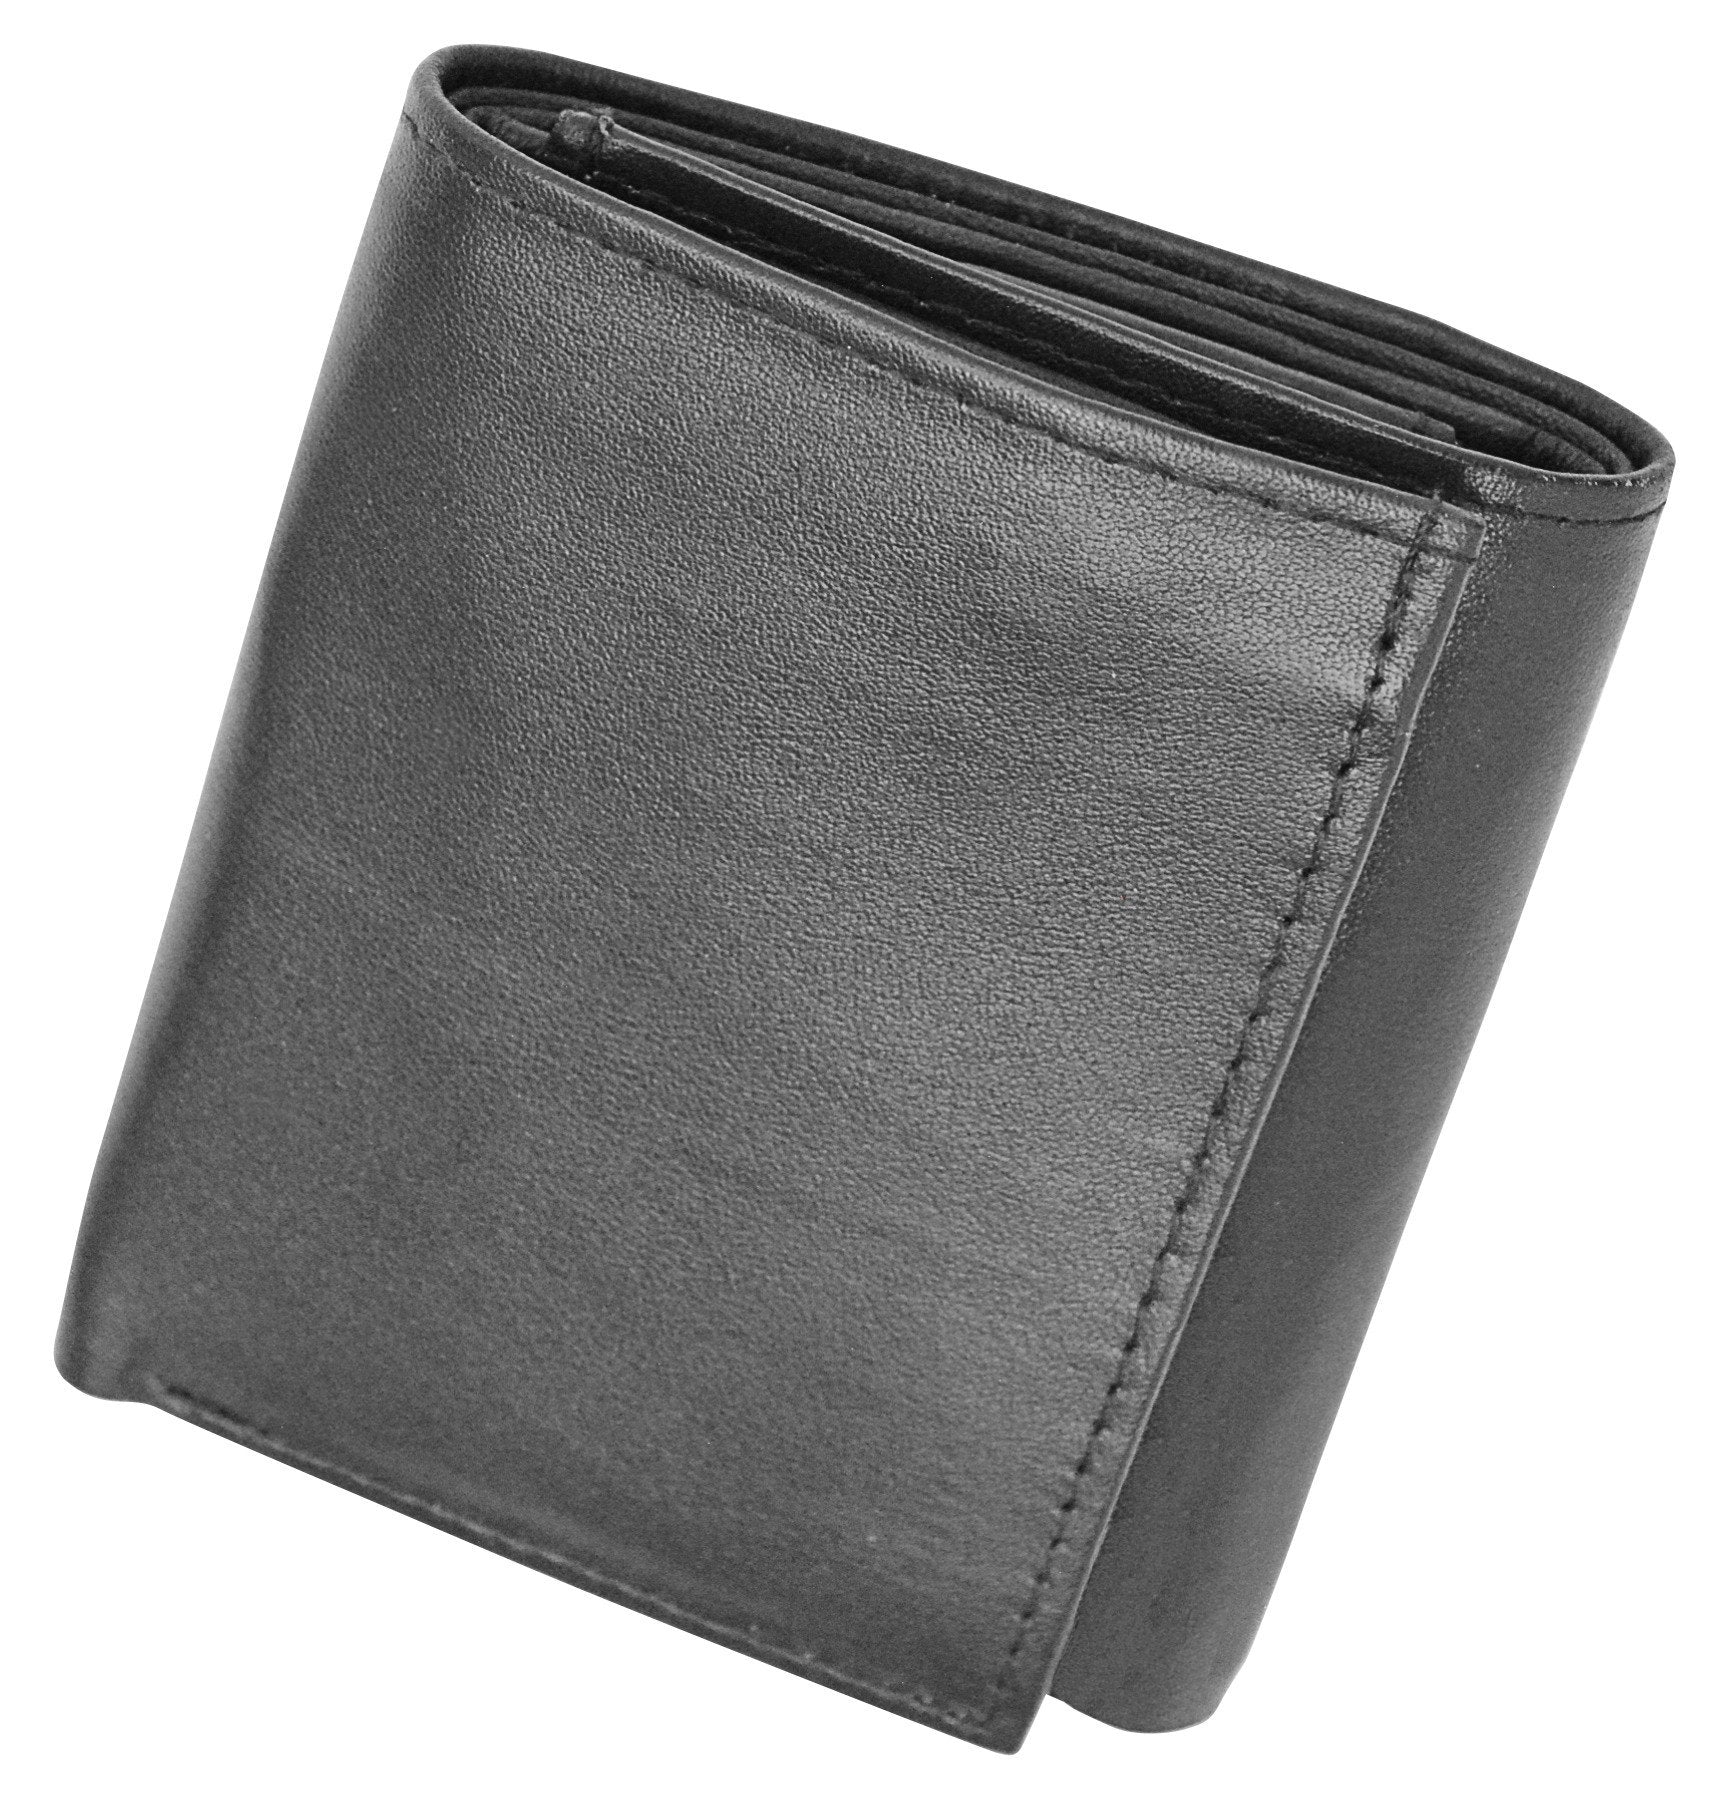 Genuine Soft Leather Tri-fold Wallet For Men - Black